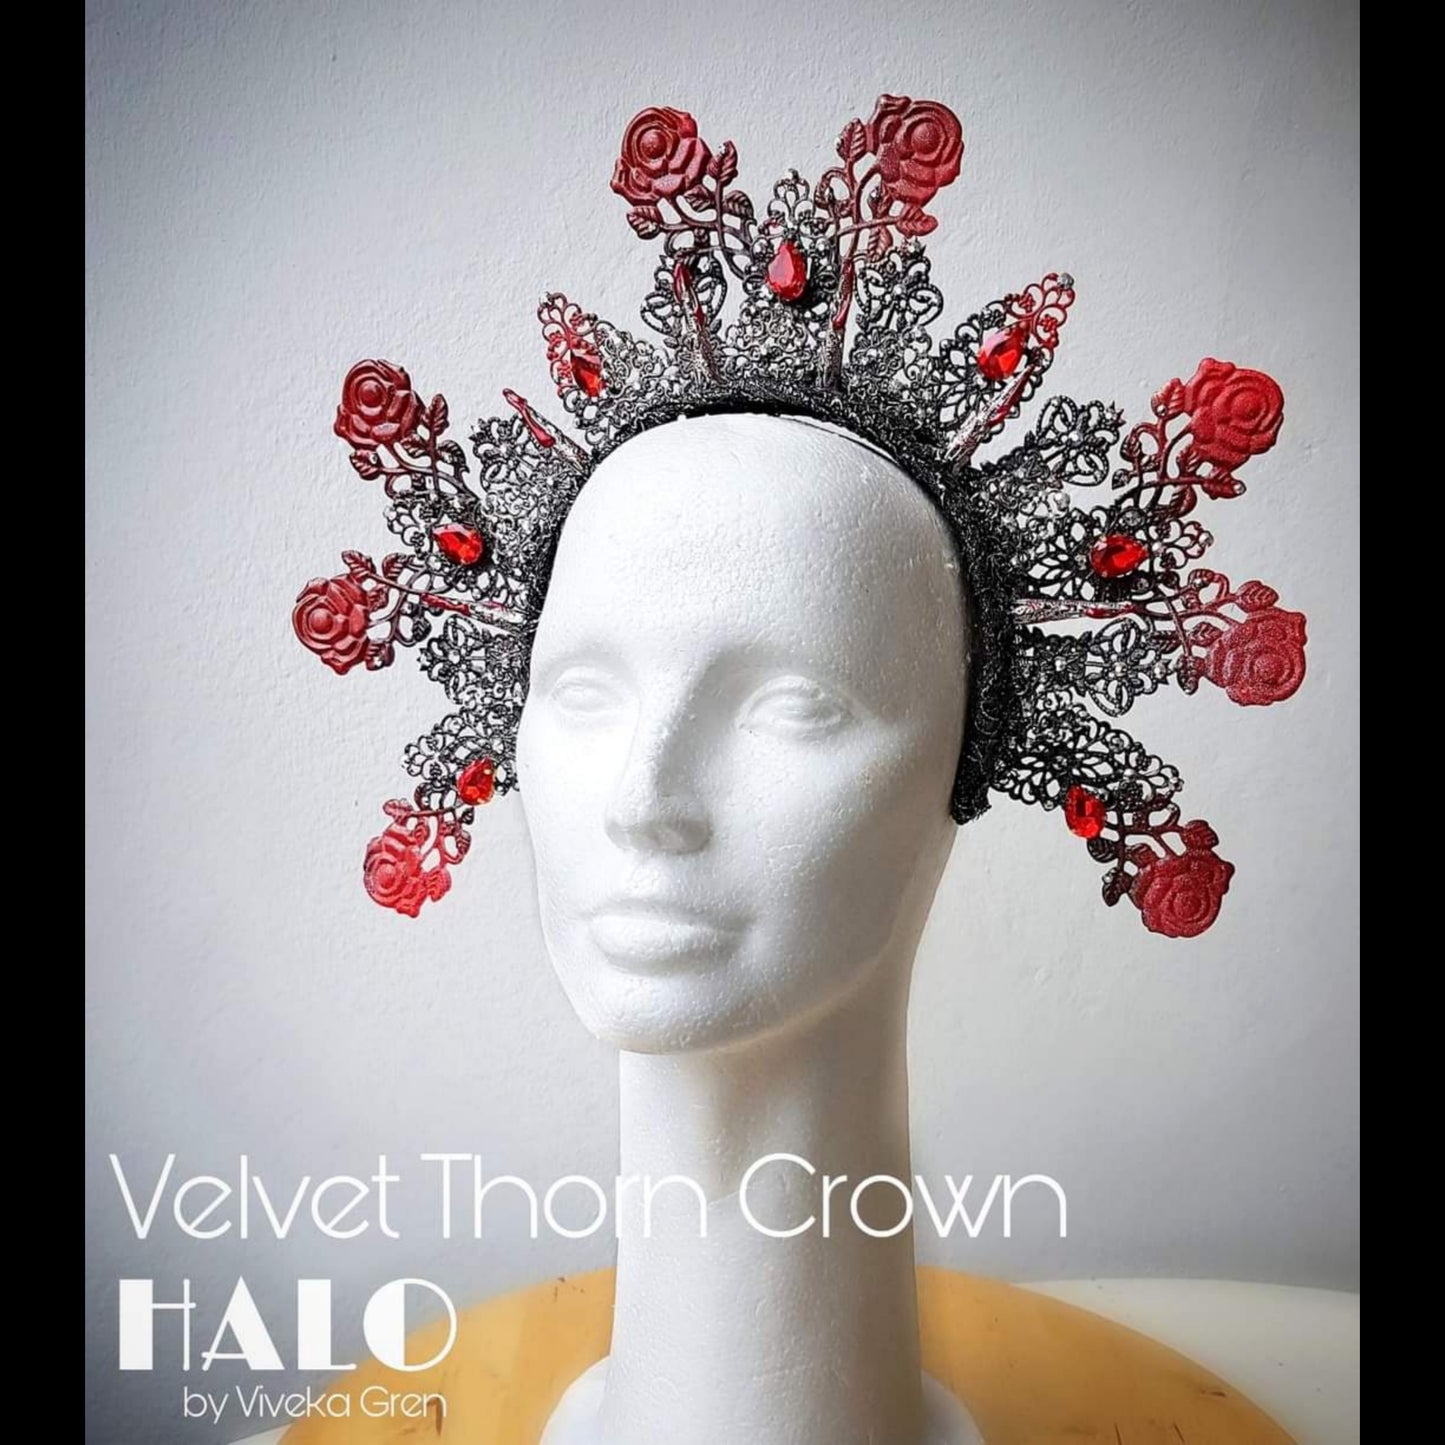 The Velvet Thorn gothic crown, reactive in UV lights